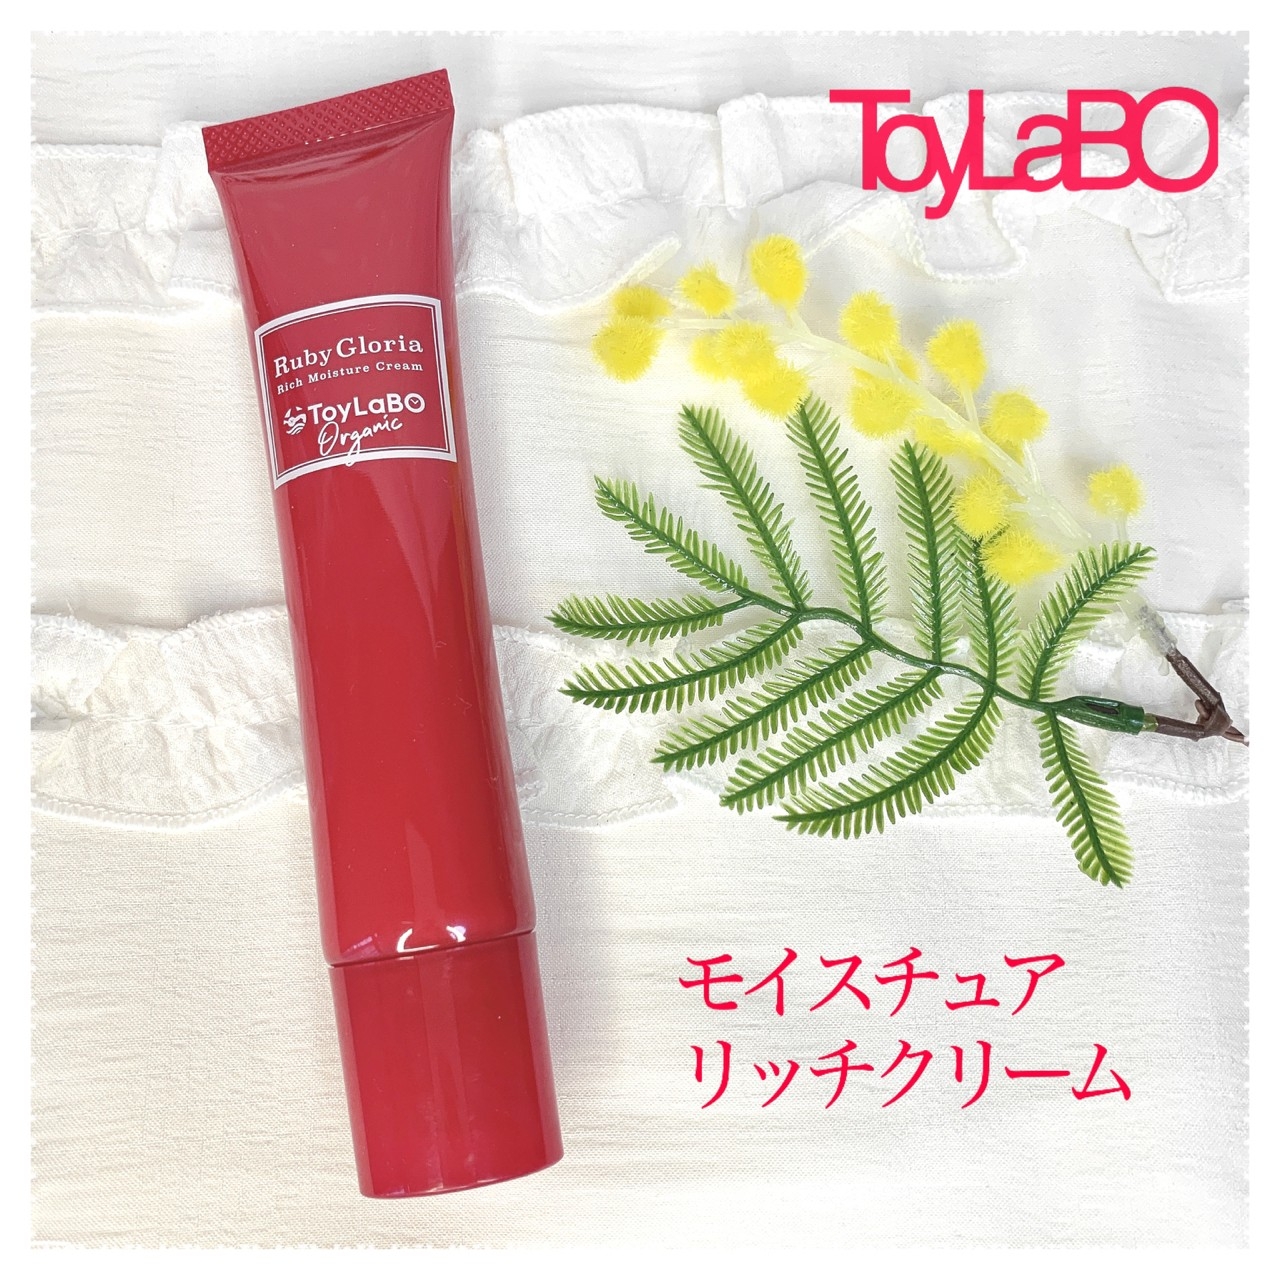 ToyLaBO(トイラボ) ルビーグロリア リッチモイスチュアクリームの悪い 